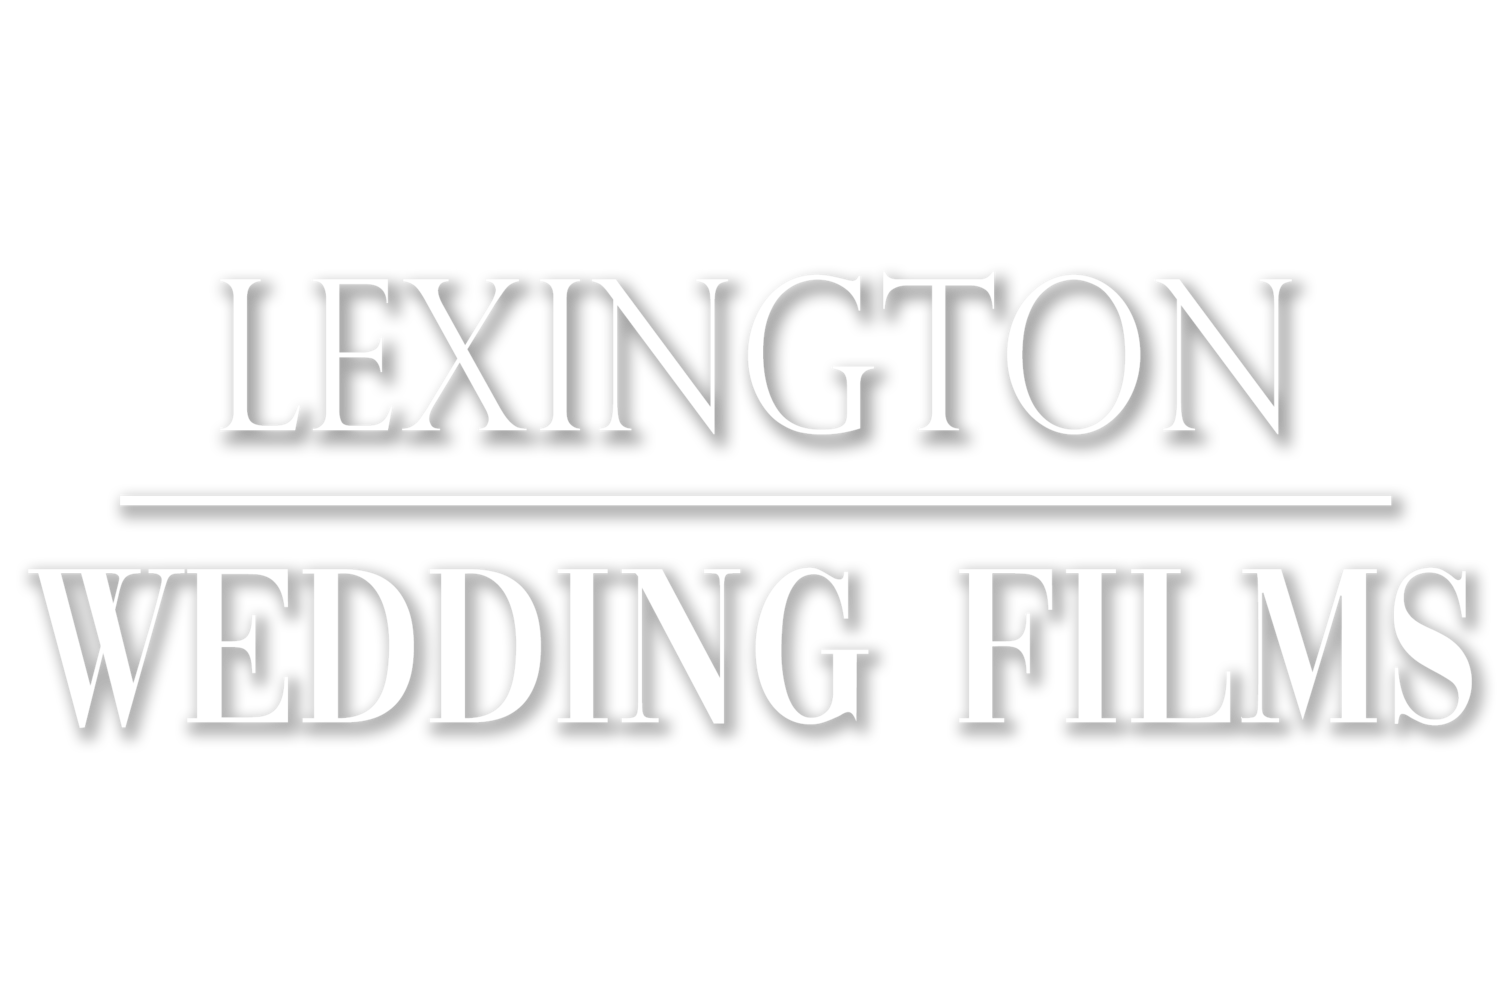 LEXINGTON WEDDING FILMS